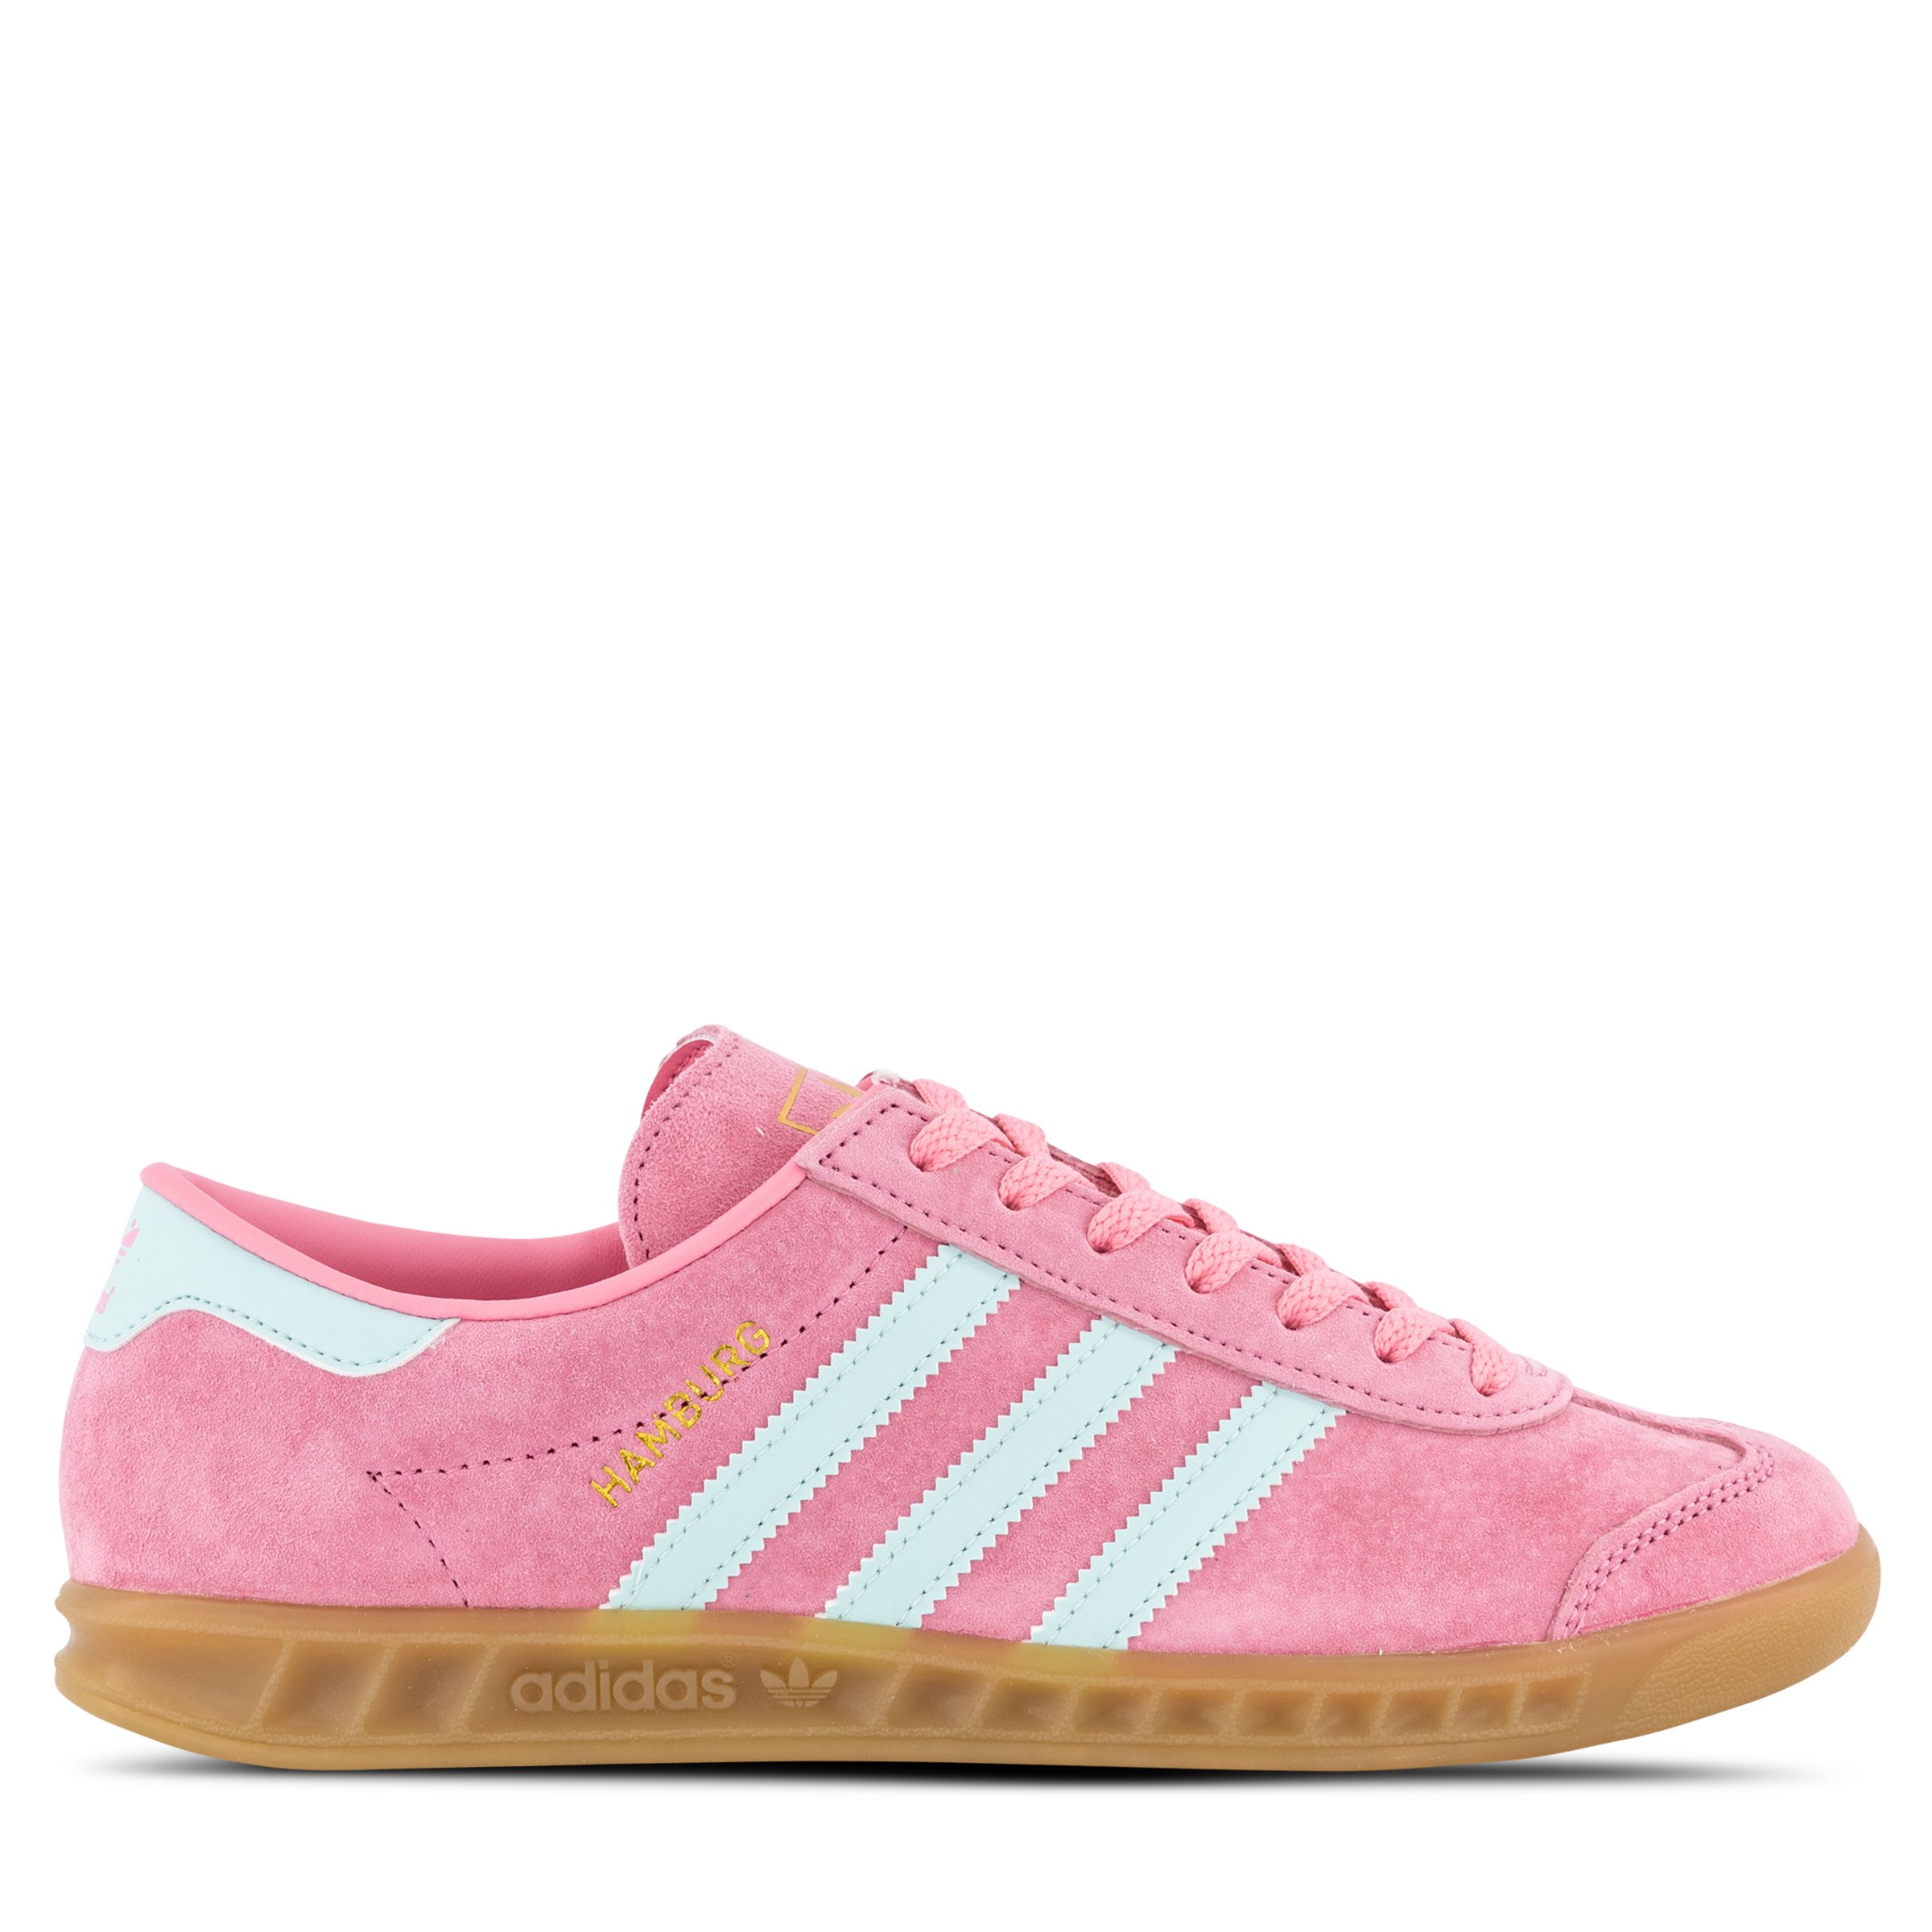 adidas Originals Hamburg Womens Bliss Pink/Semi Flash Aqua/Gum ...